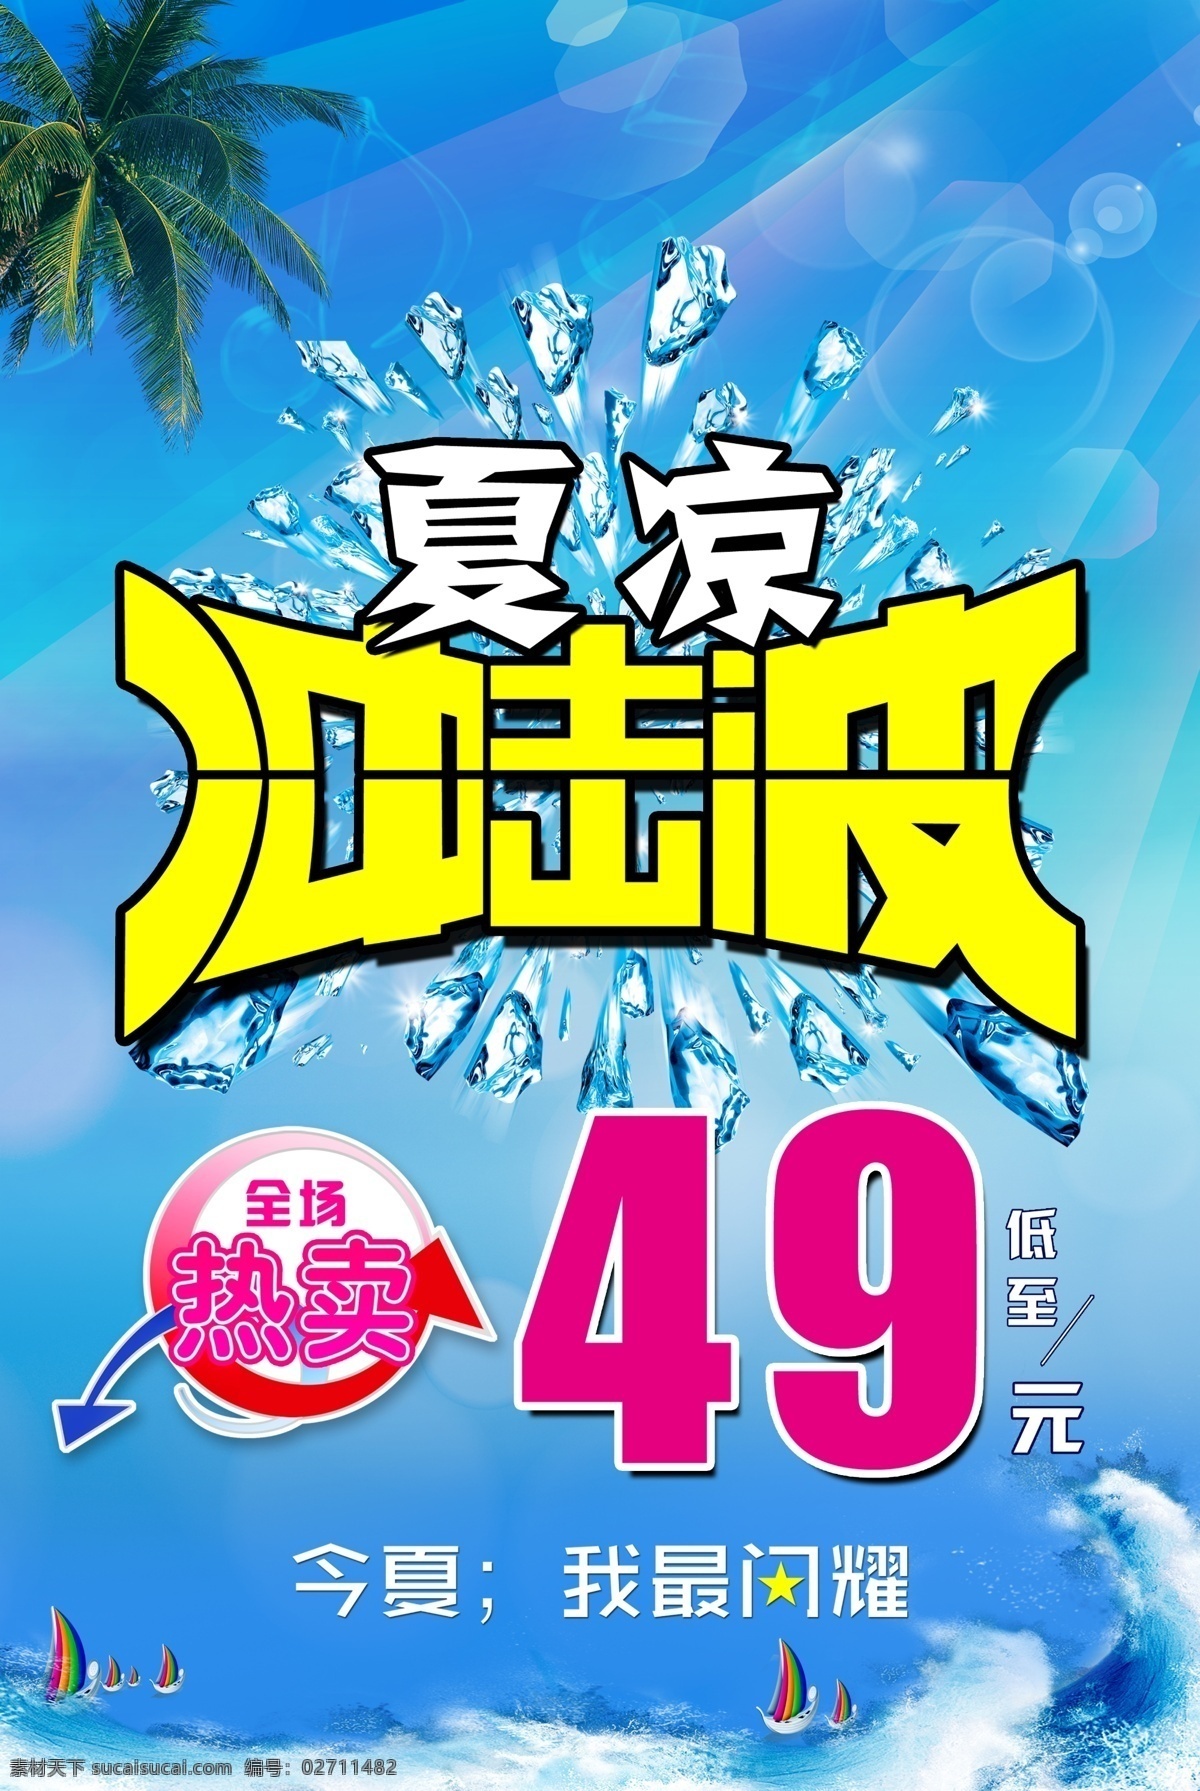 夏日 打折 广告宣传 中文字 冰块 大海 帆船 椰树 浪花效果 泡泡效果 蓝色渐变背景